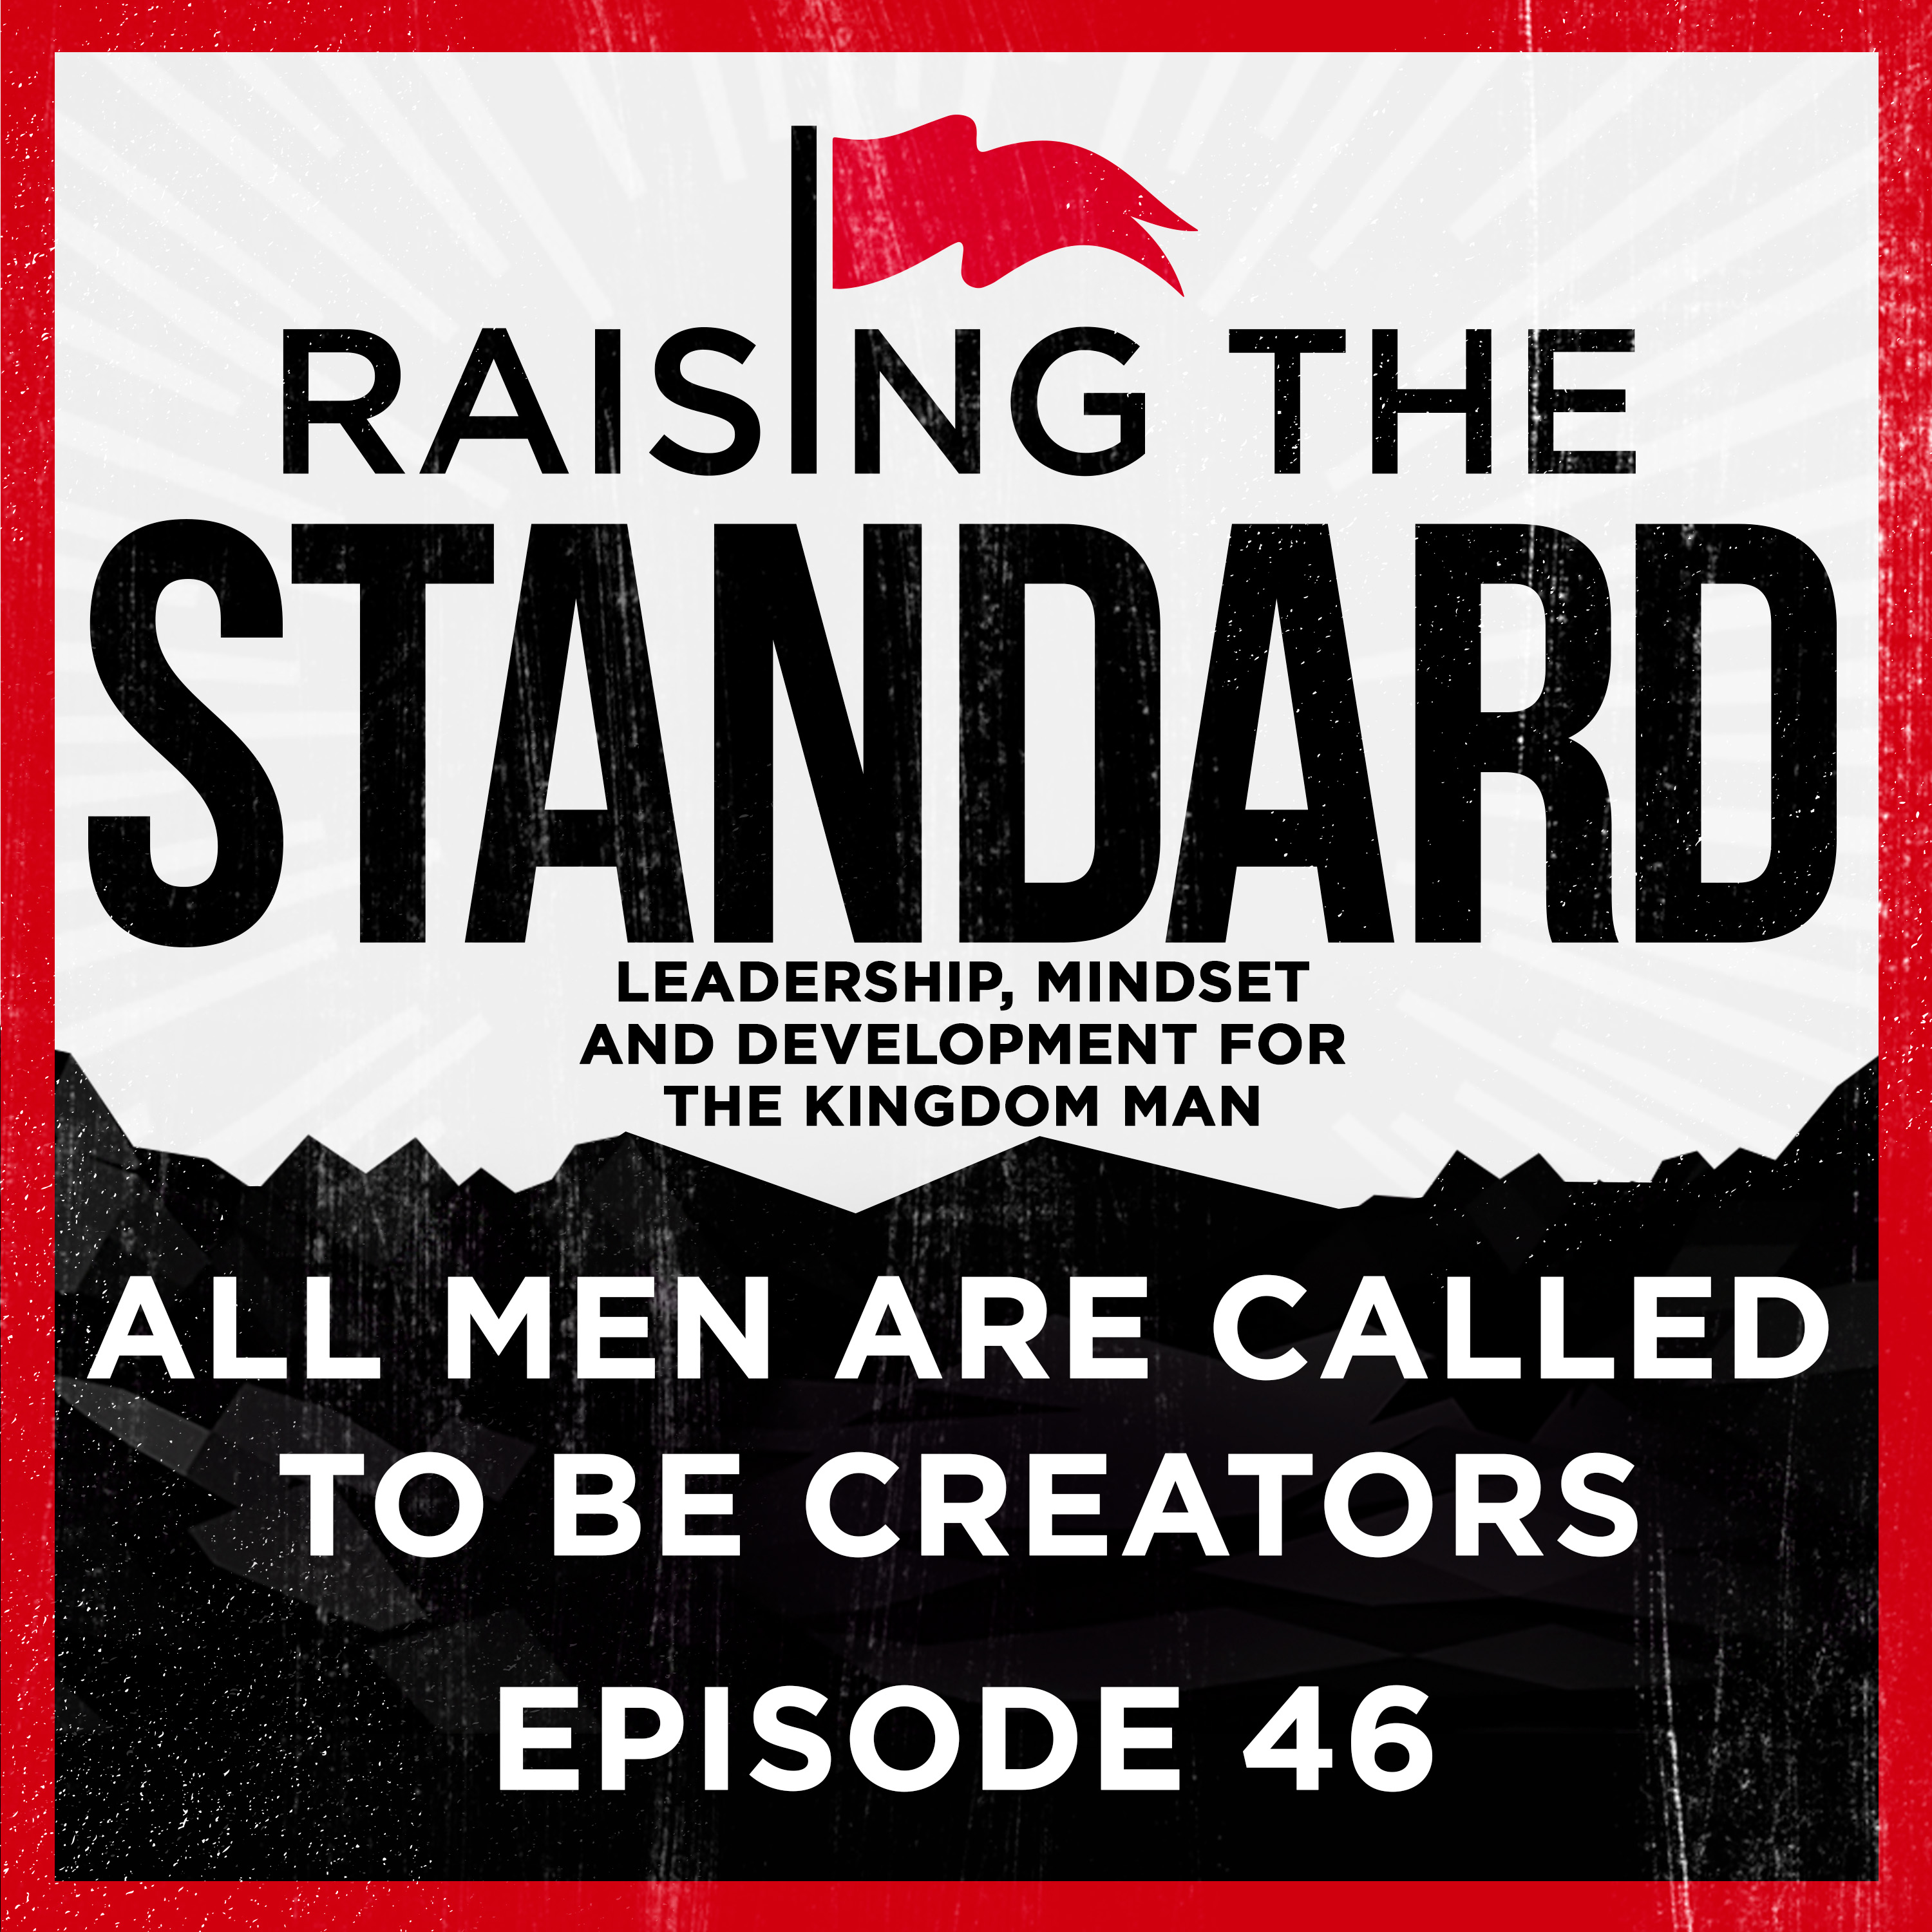 Artwork for podcast Raising The Standard